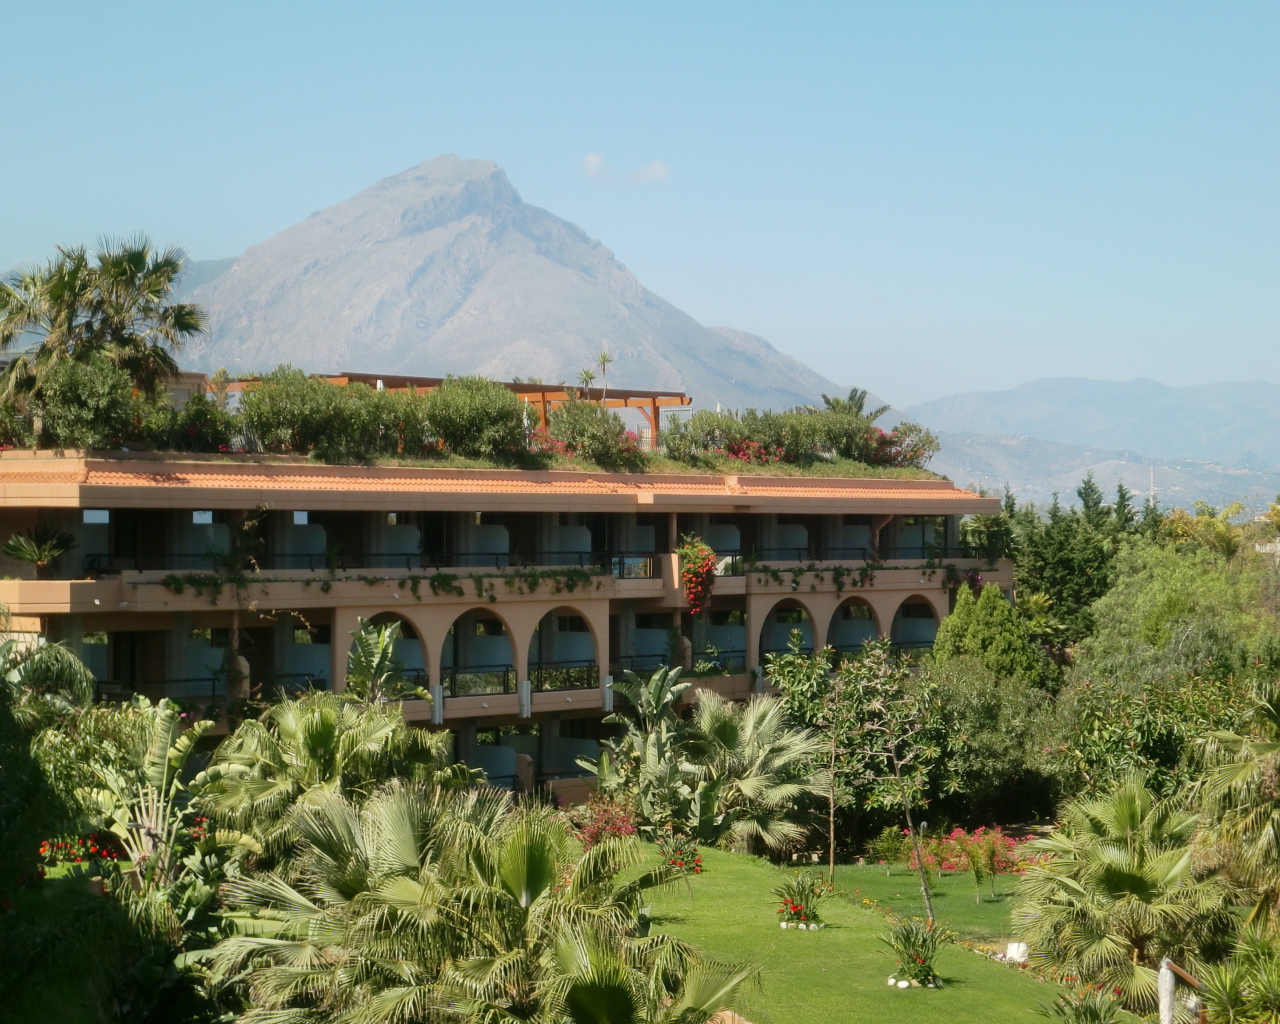 Отель на фоне вулкана Этна на острове Сицилия, Италия